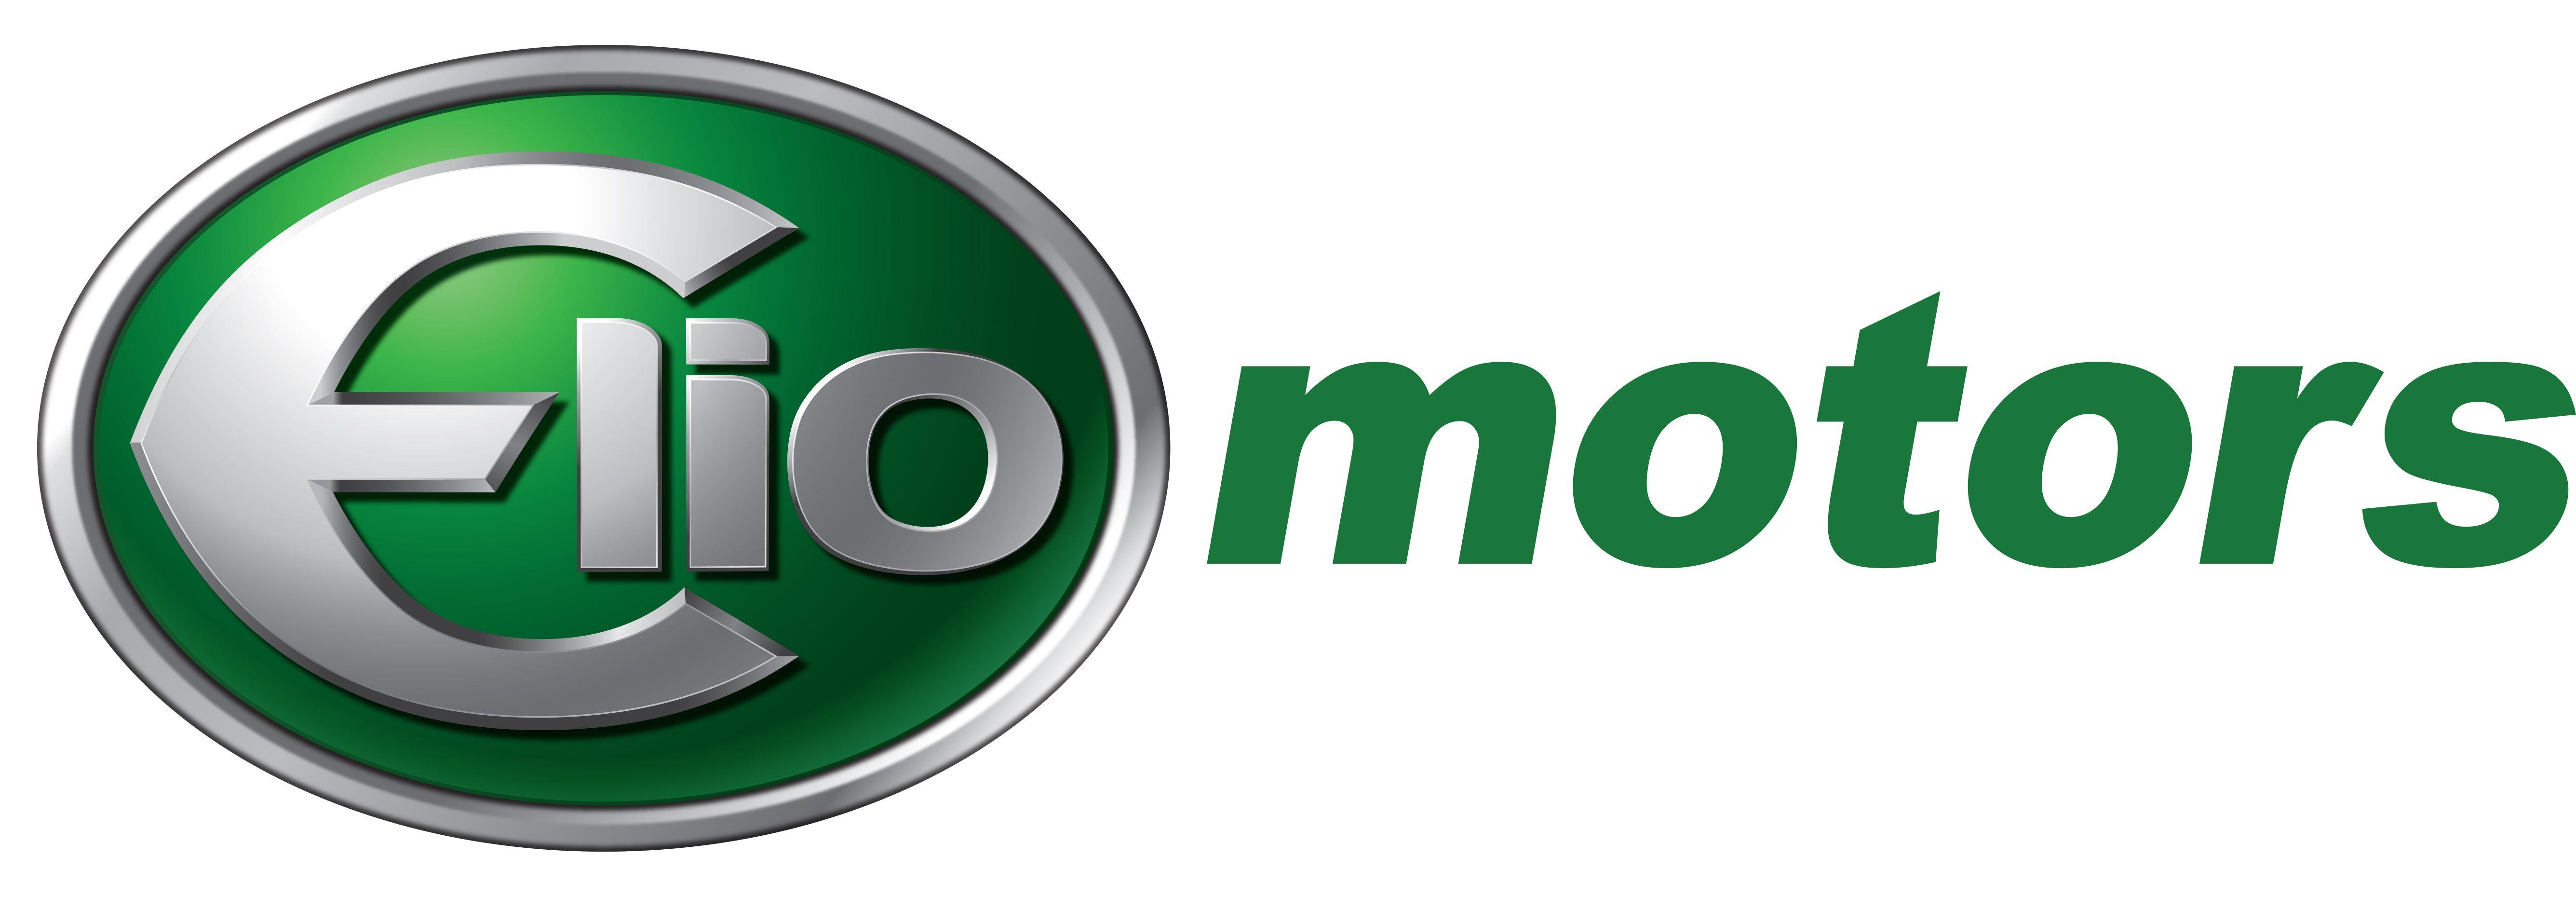 Old General Motors Logo - Elio Motors 3 Wheeled Car Delayed Until September 2015